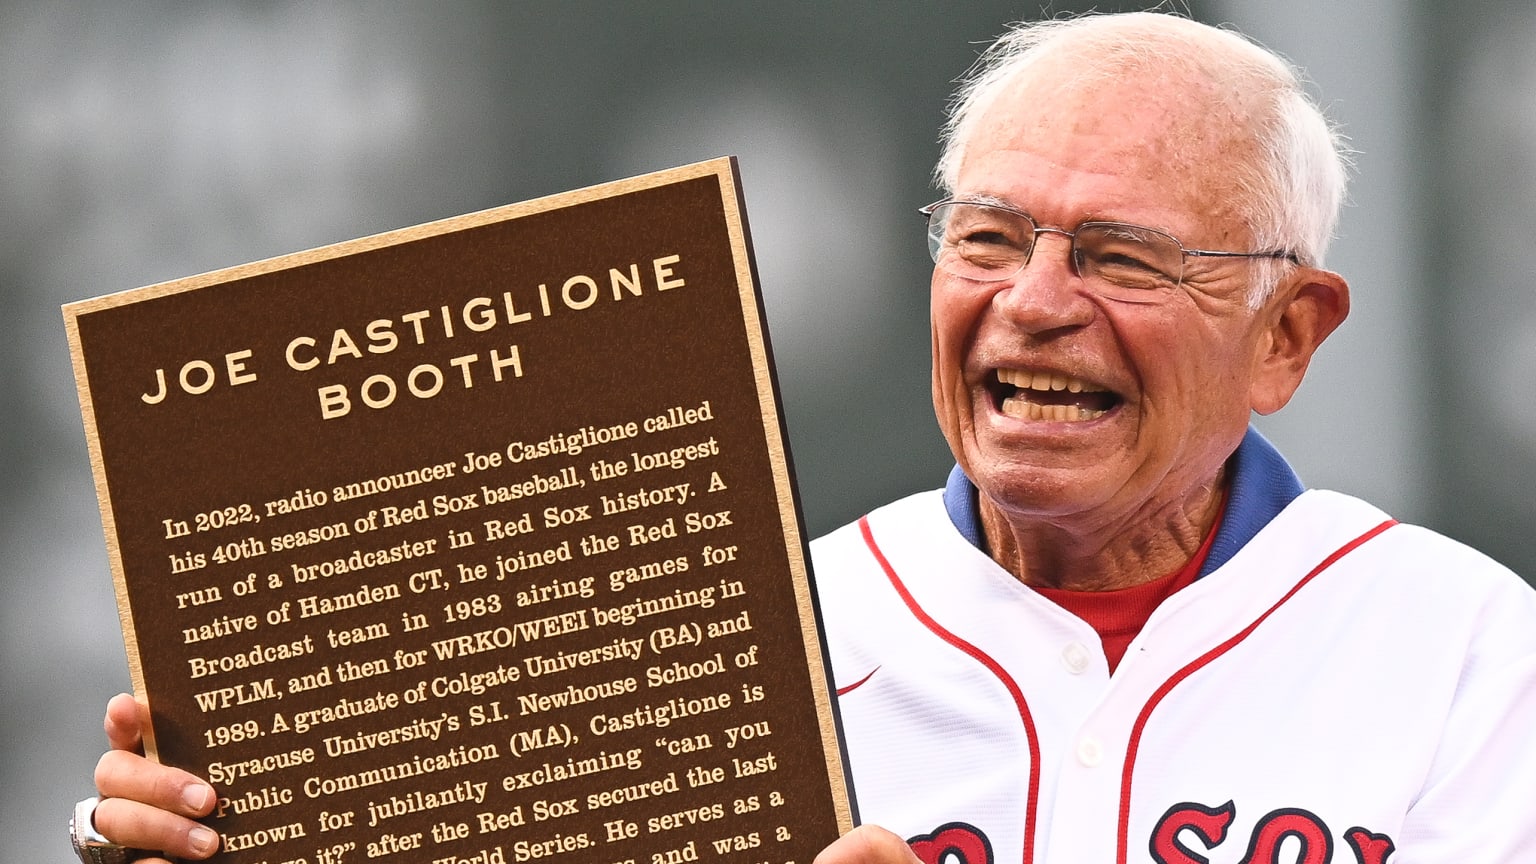 Joe Castiglione poses with a plaque